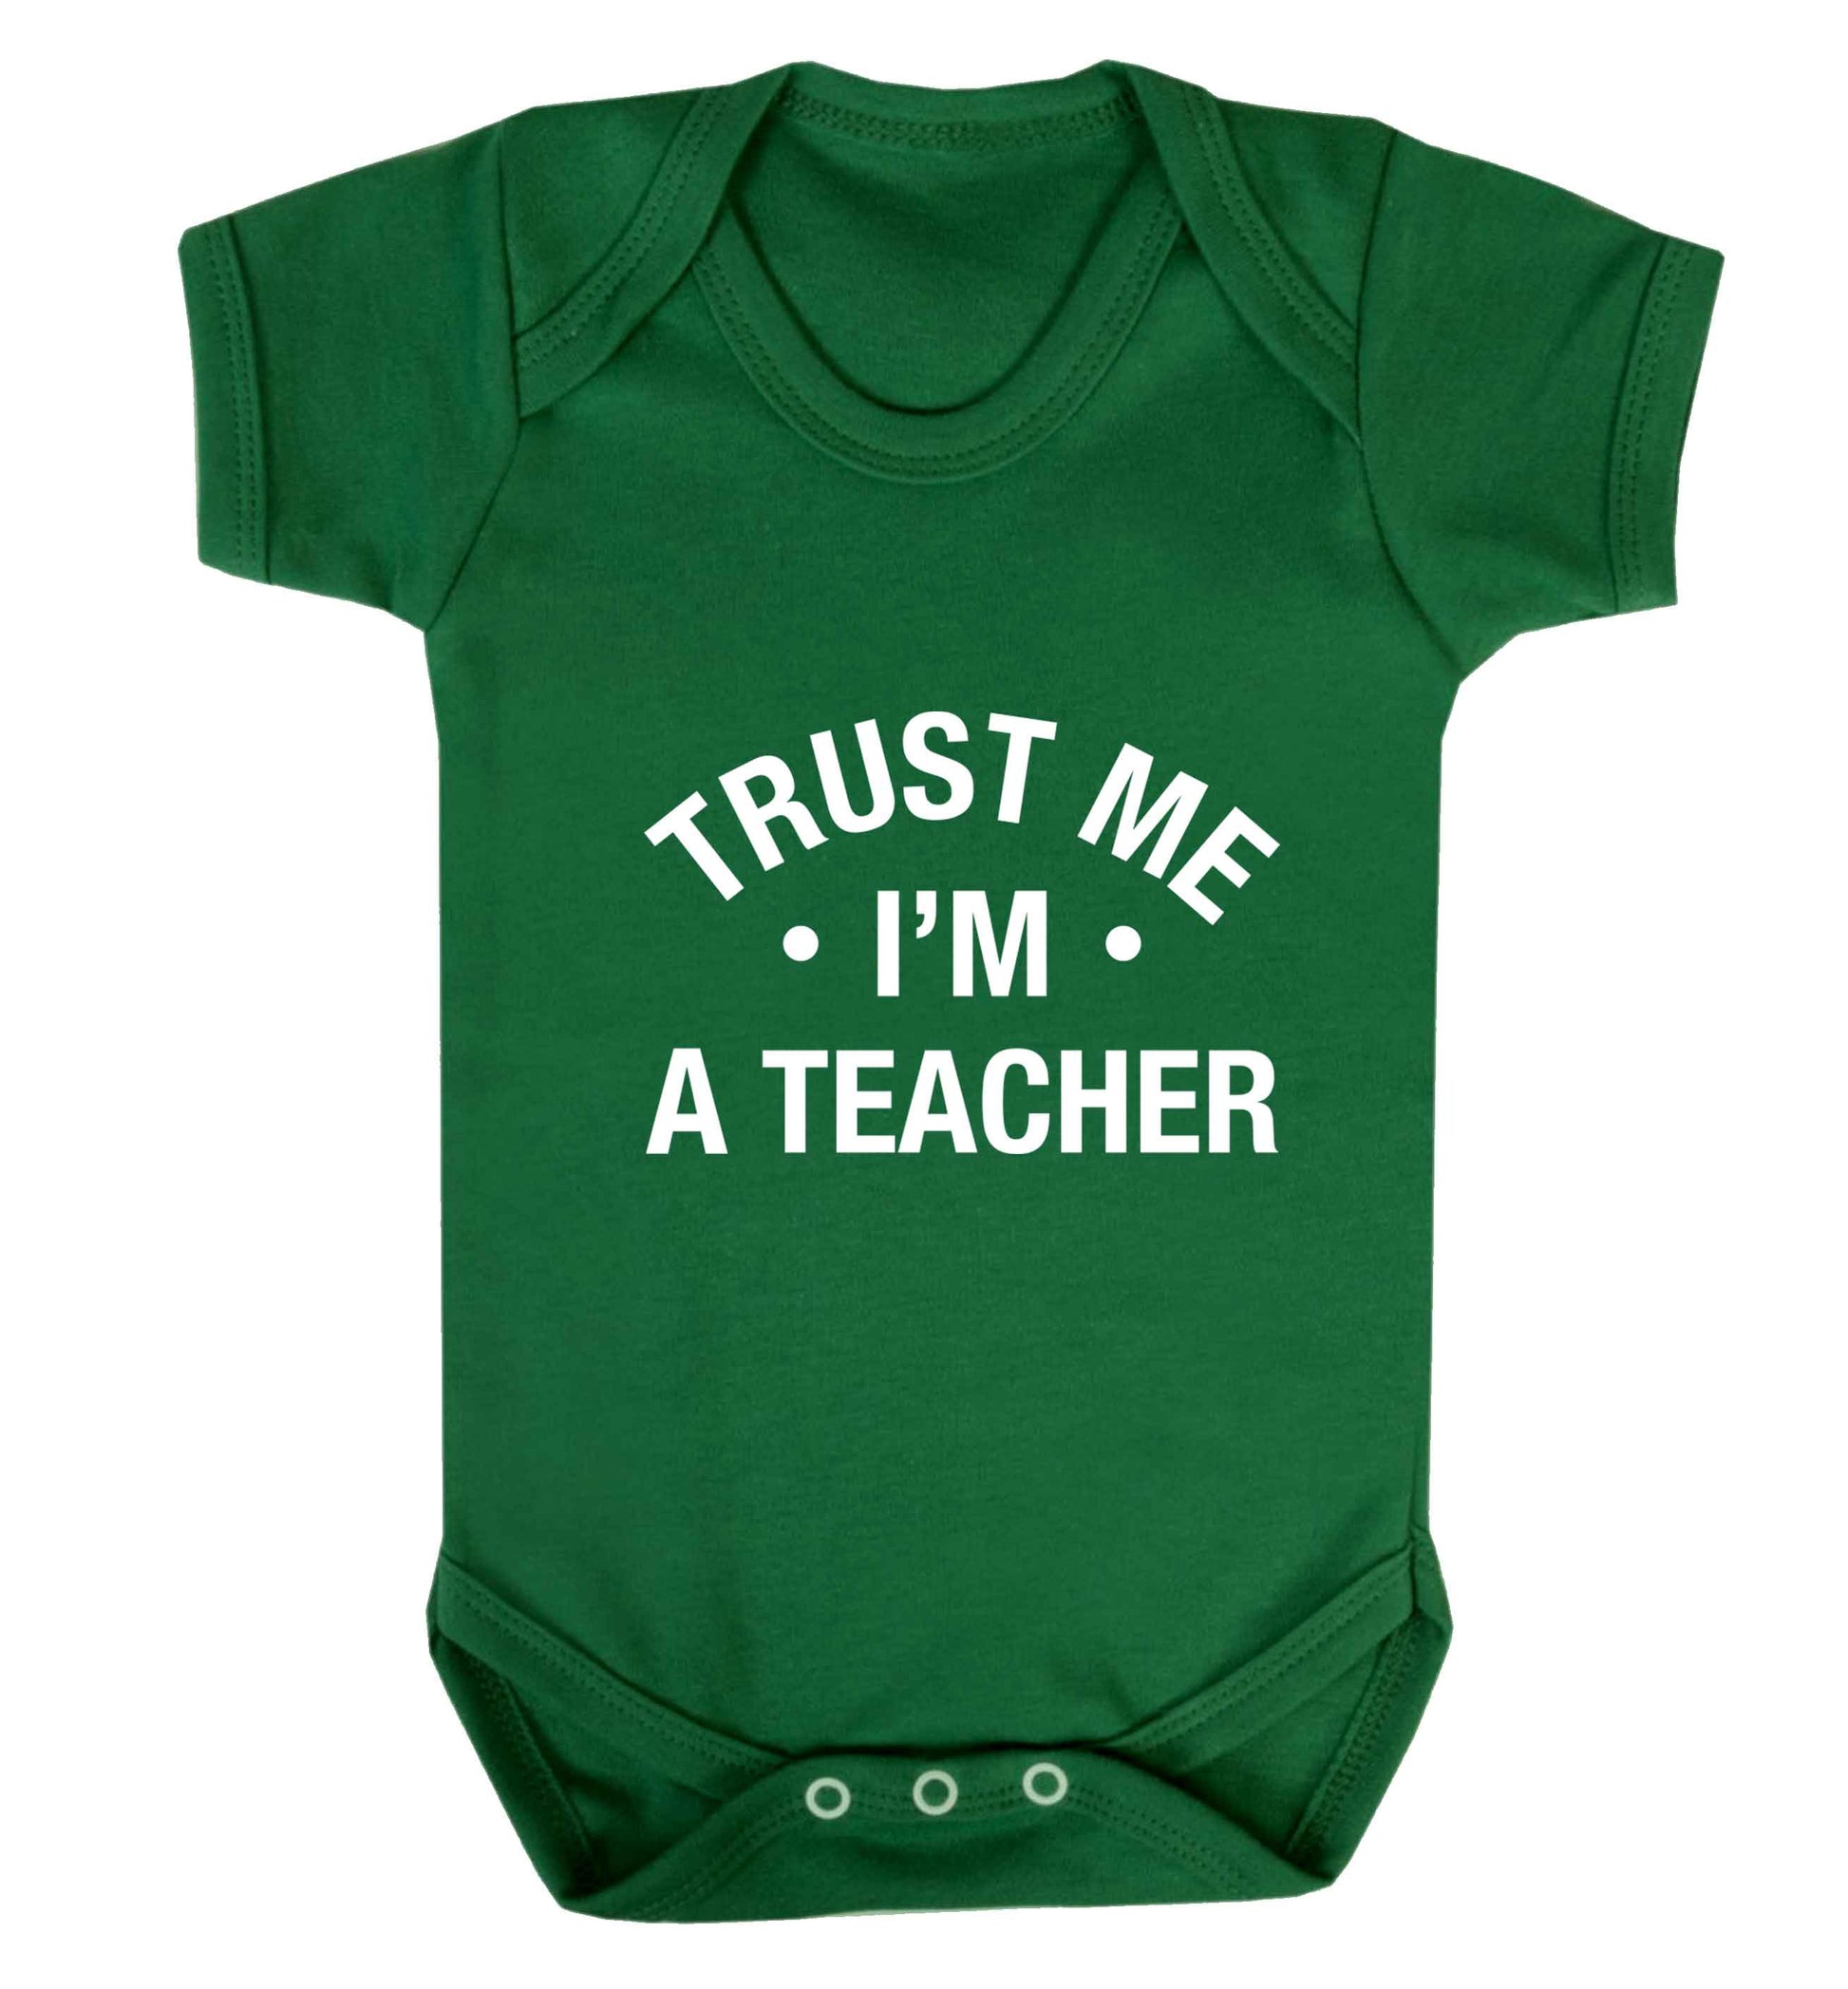 Trust me I'm a teacher baby vest green 18-24 months